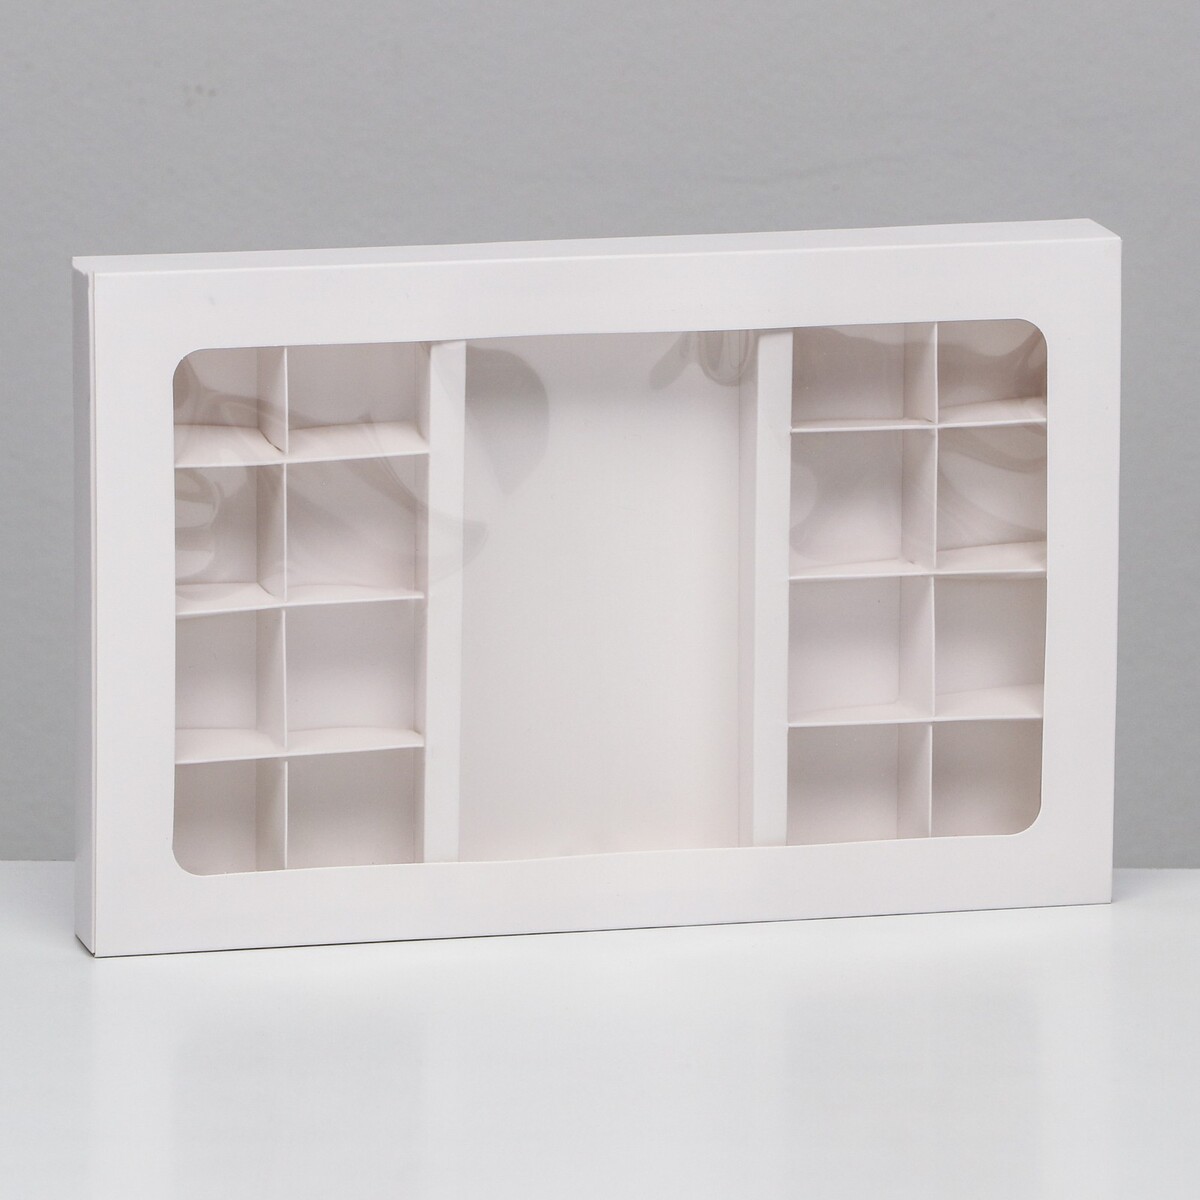 Коробка по 8 + 8 конфет + шоколад, с окном, белая 30 х 19,5 х 3 см коробка самосборная белая 13 х 13 х 3 см